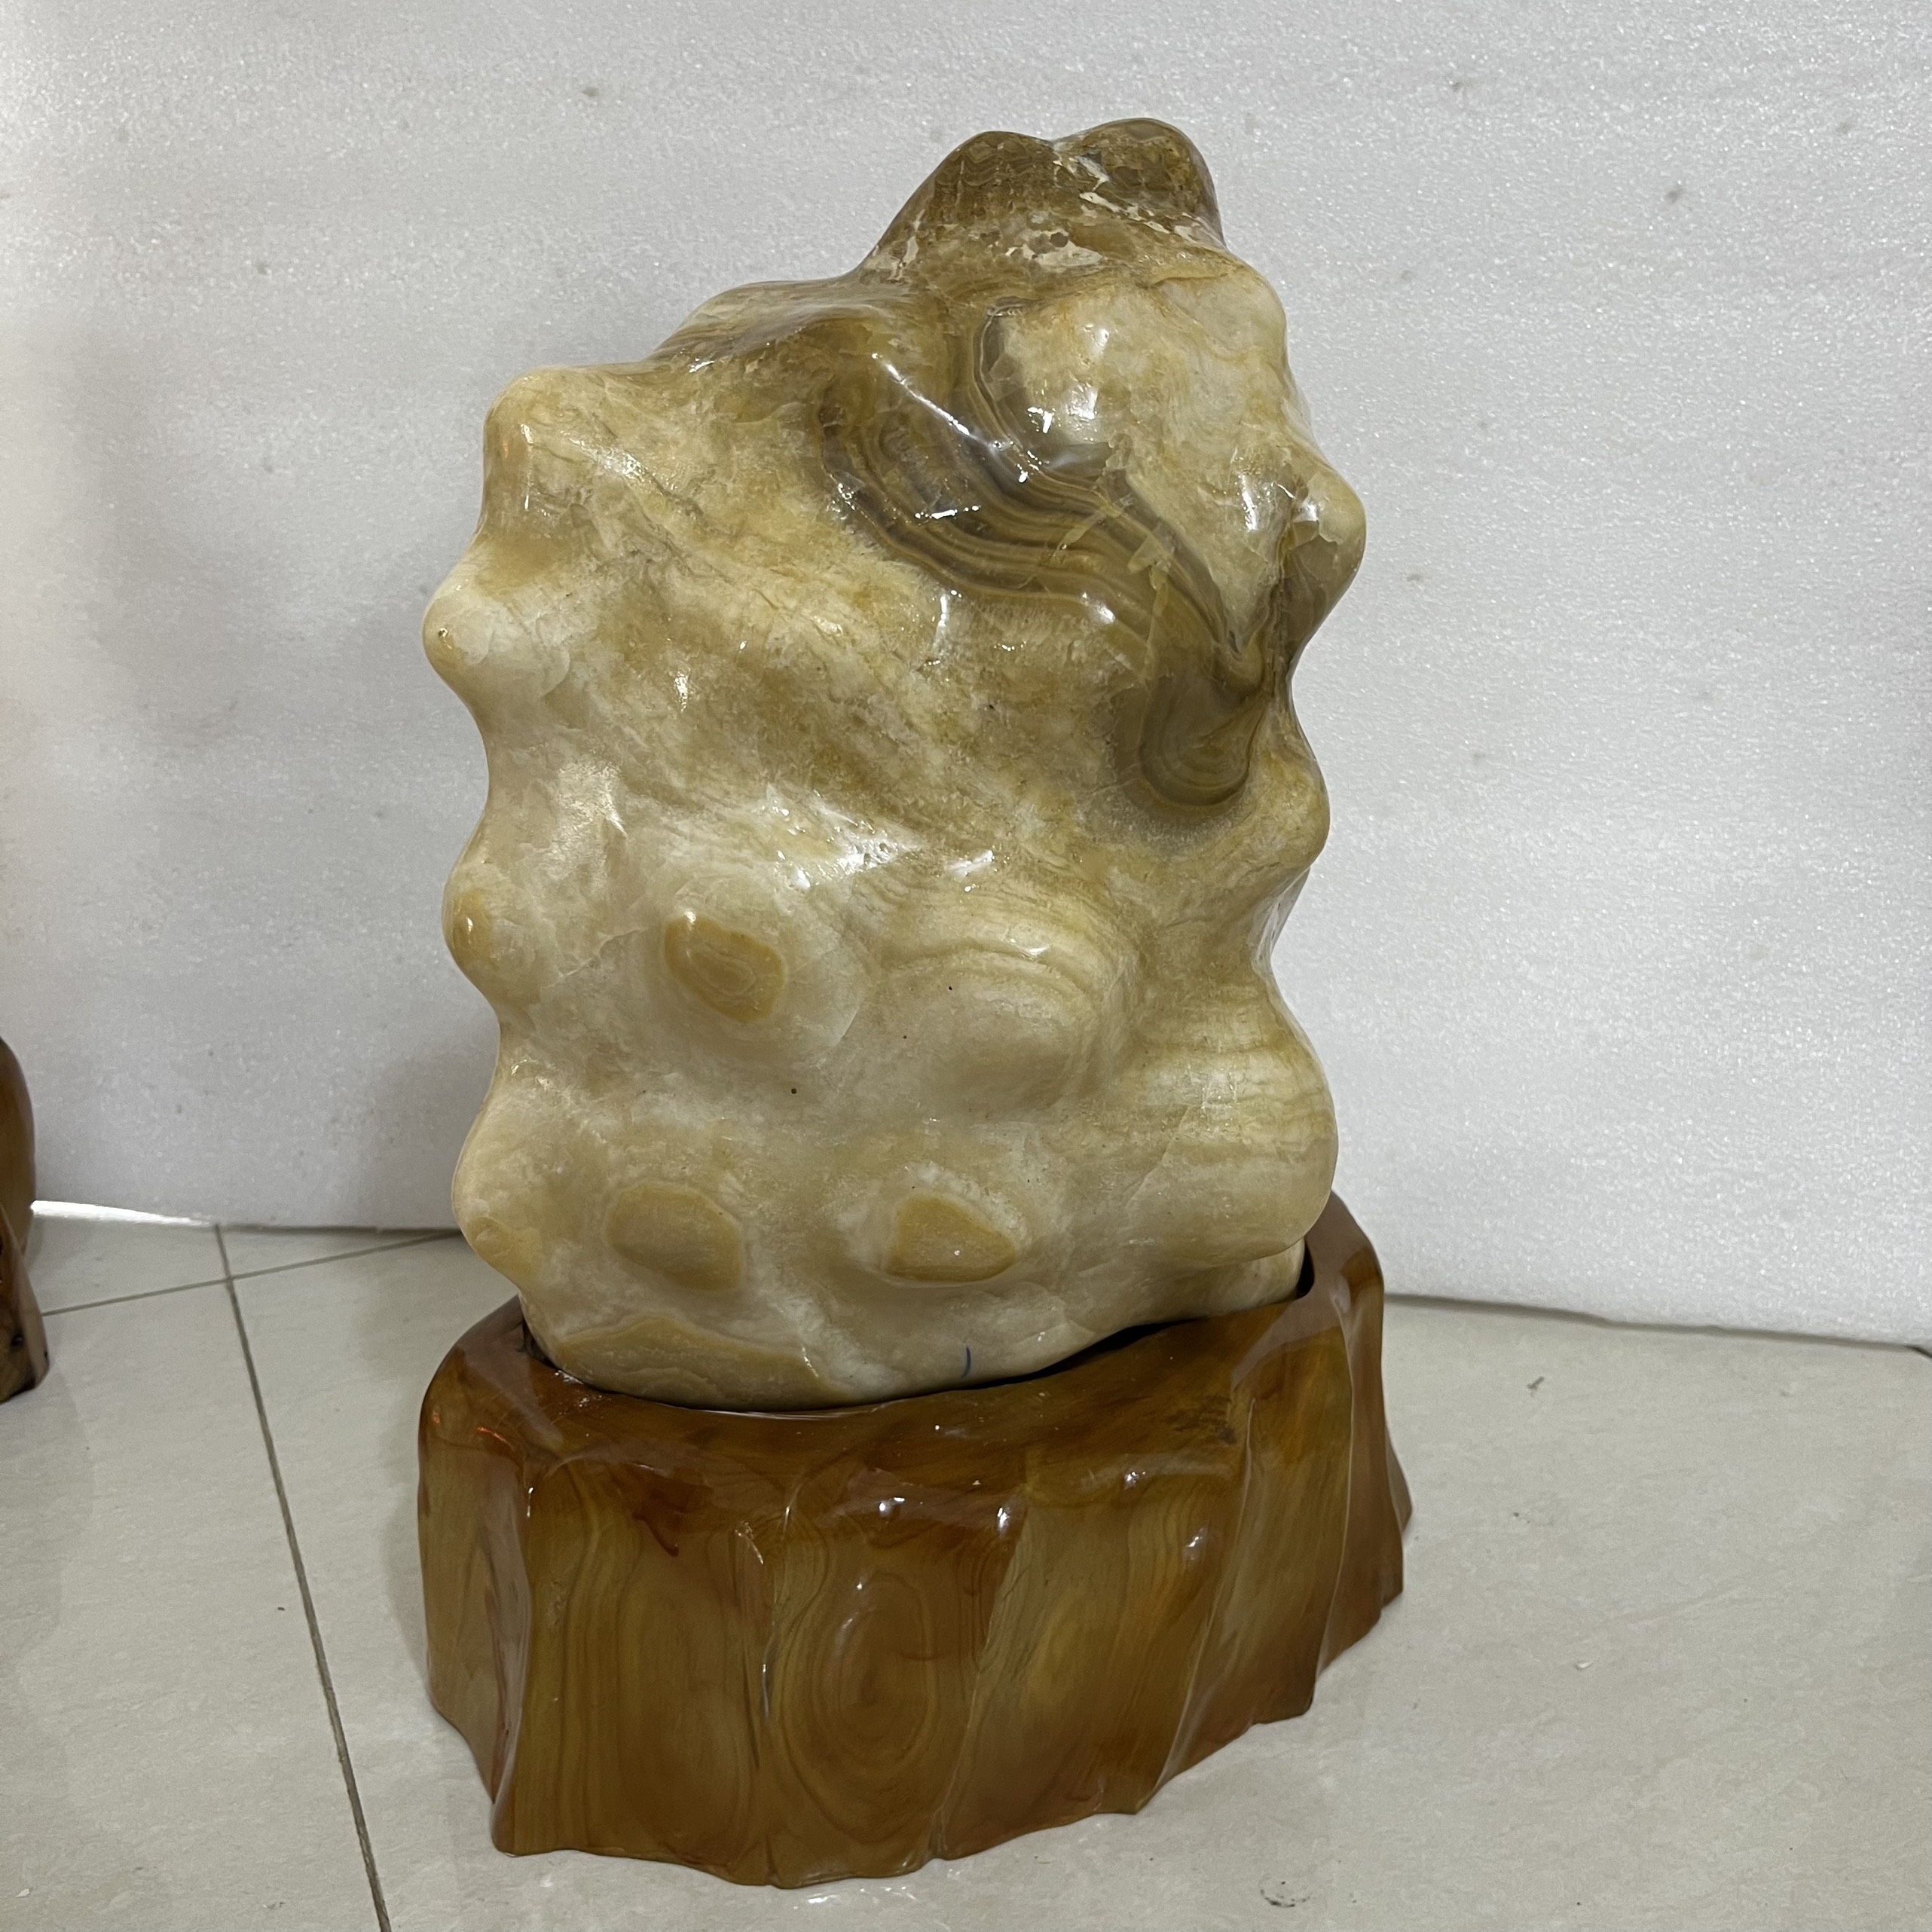 Đá trấn trạch, đá phong thủy cao 50cm, nặng 25 kg cho mệnh Kim và Thổ